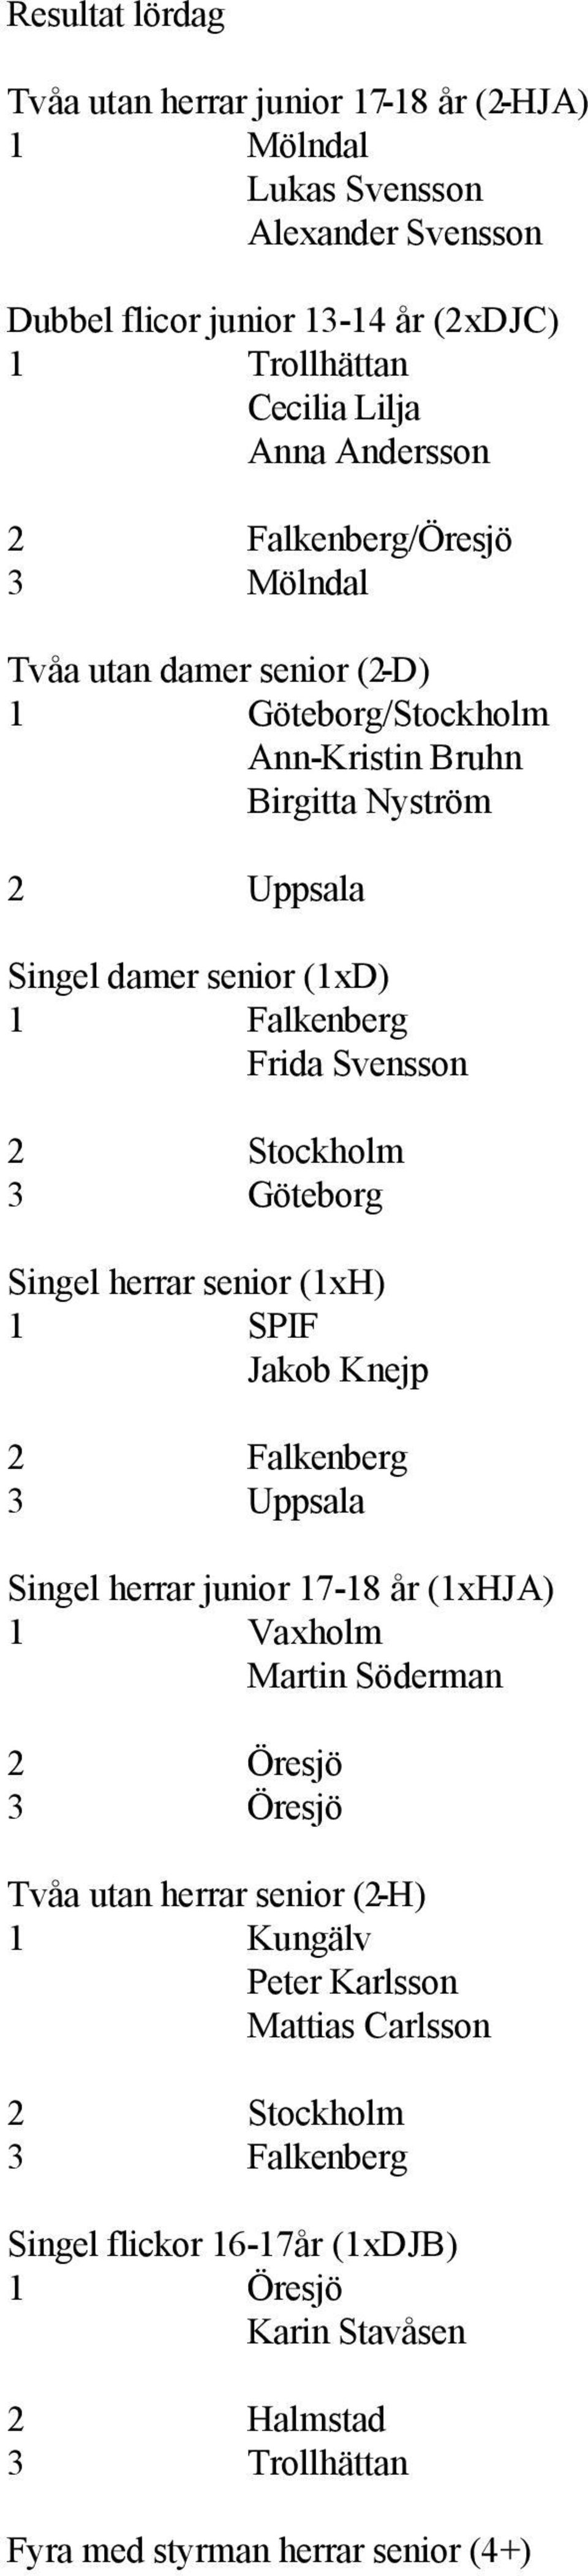 Svensson 3 Göteborg Singel herrar senior (1xH) 1 SPIF Jakob Knejp Singel herrar junior 17-18 år (1xHJA) 1 Vaxholm Martin Söderman 3 Öresjö Tvåa utan